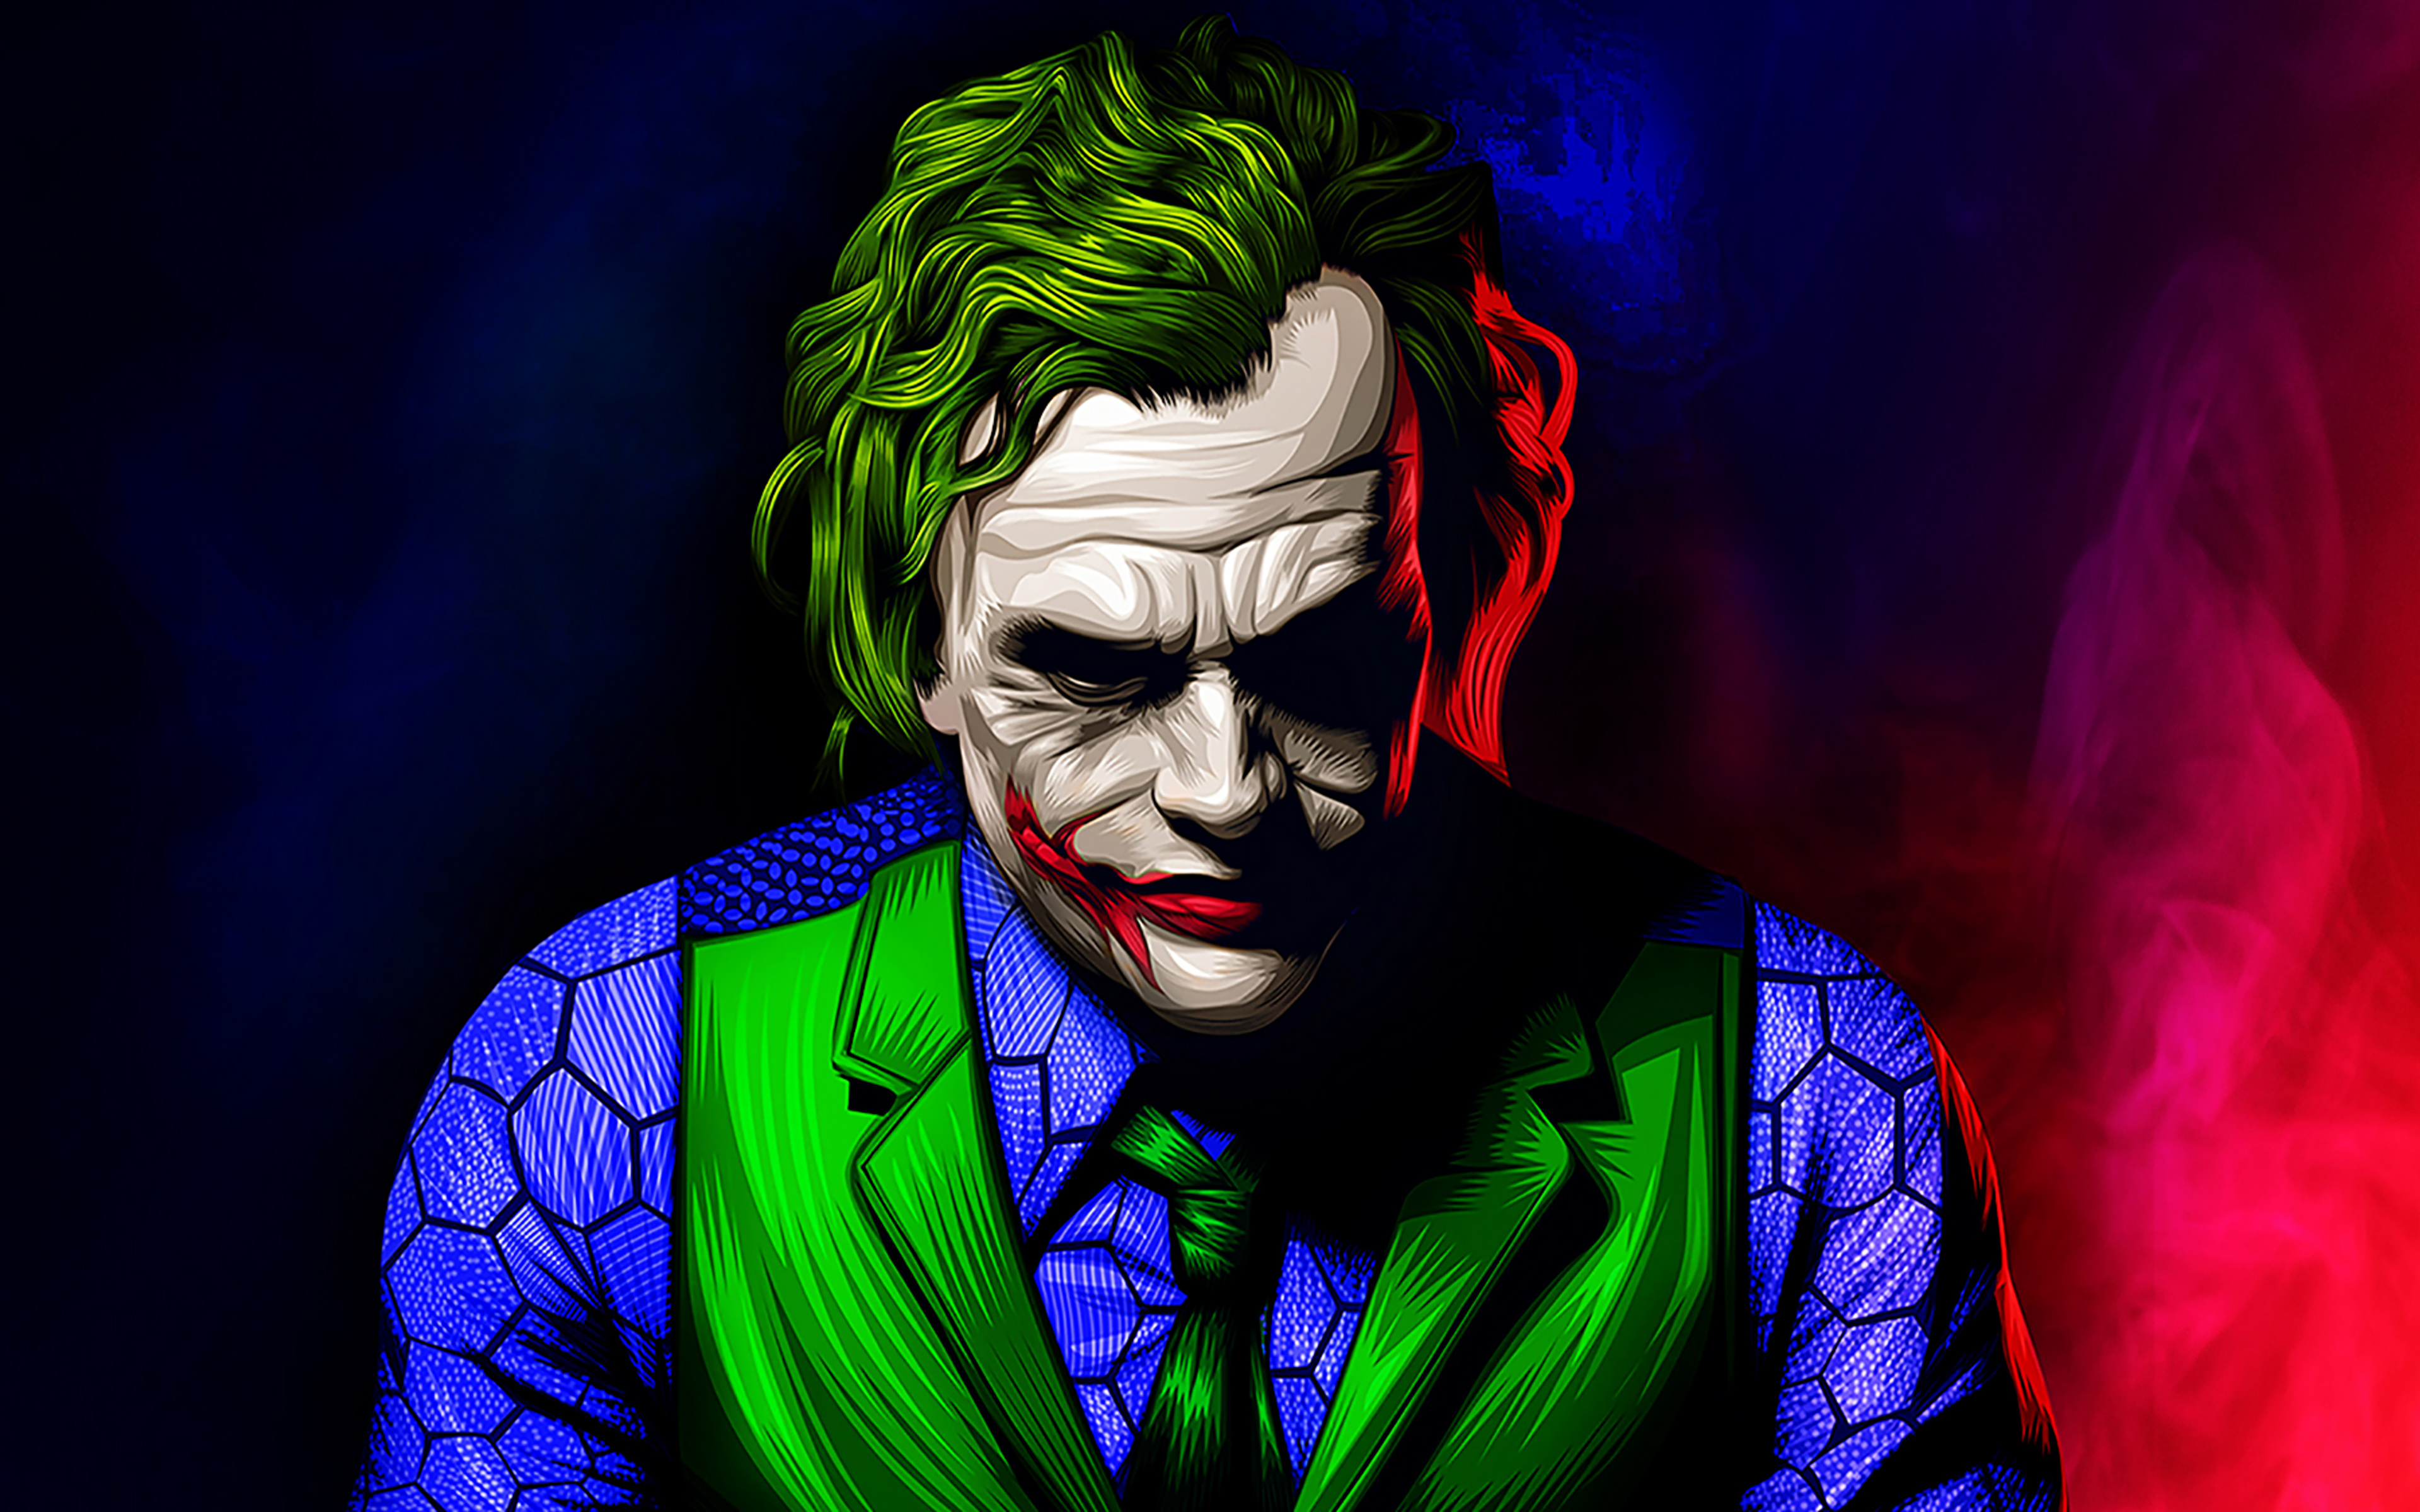  Joker  Artwork Illustration Wallpaper  4k  Ultra  HD  ID 3810